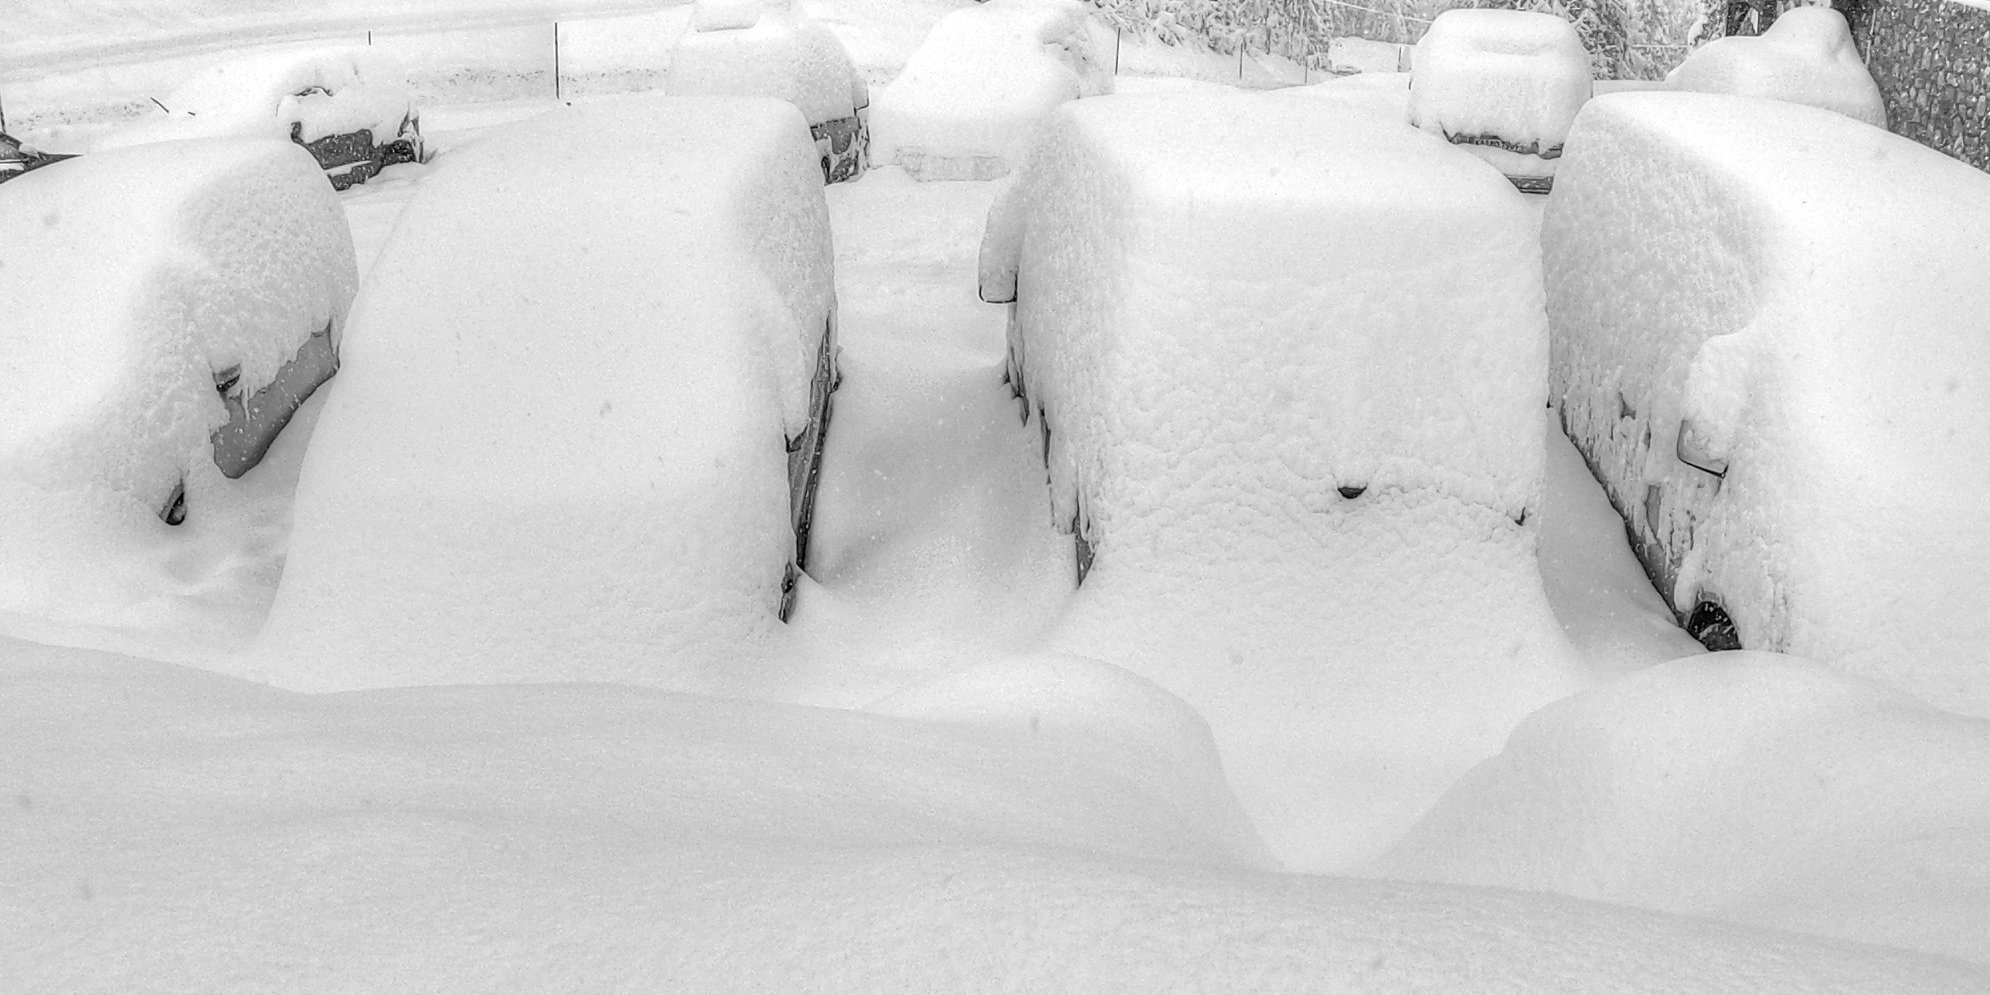 Autók a hó alatt Hochkönigen (1500 m) - Fotó: Stánicz Balázs